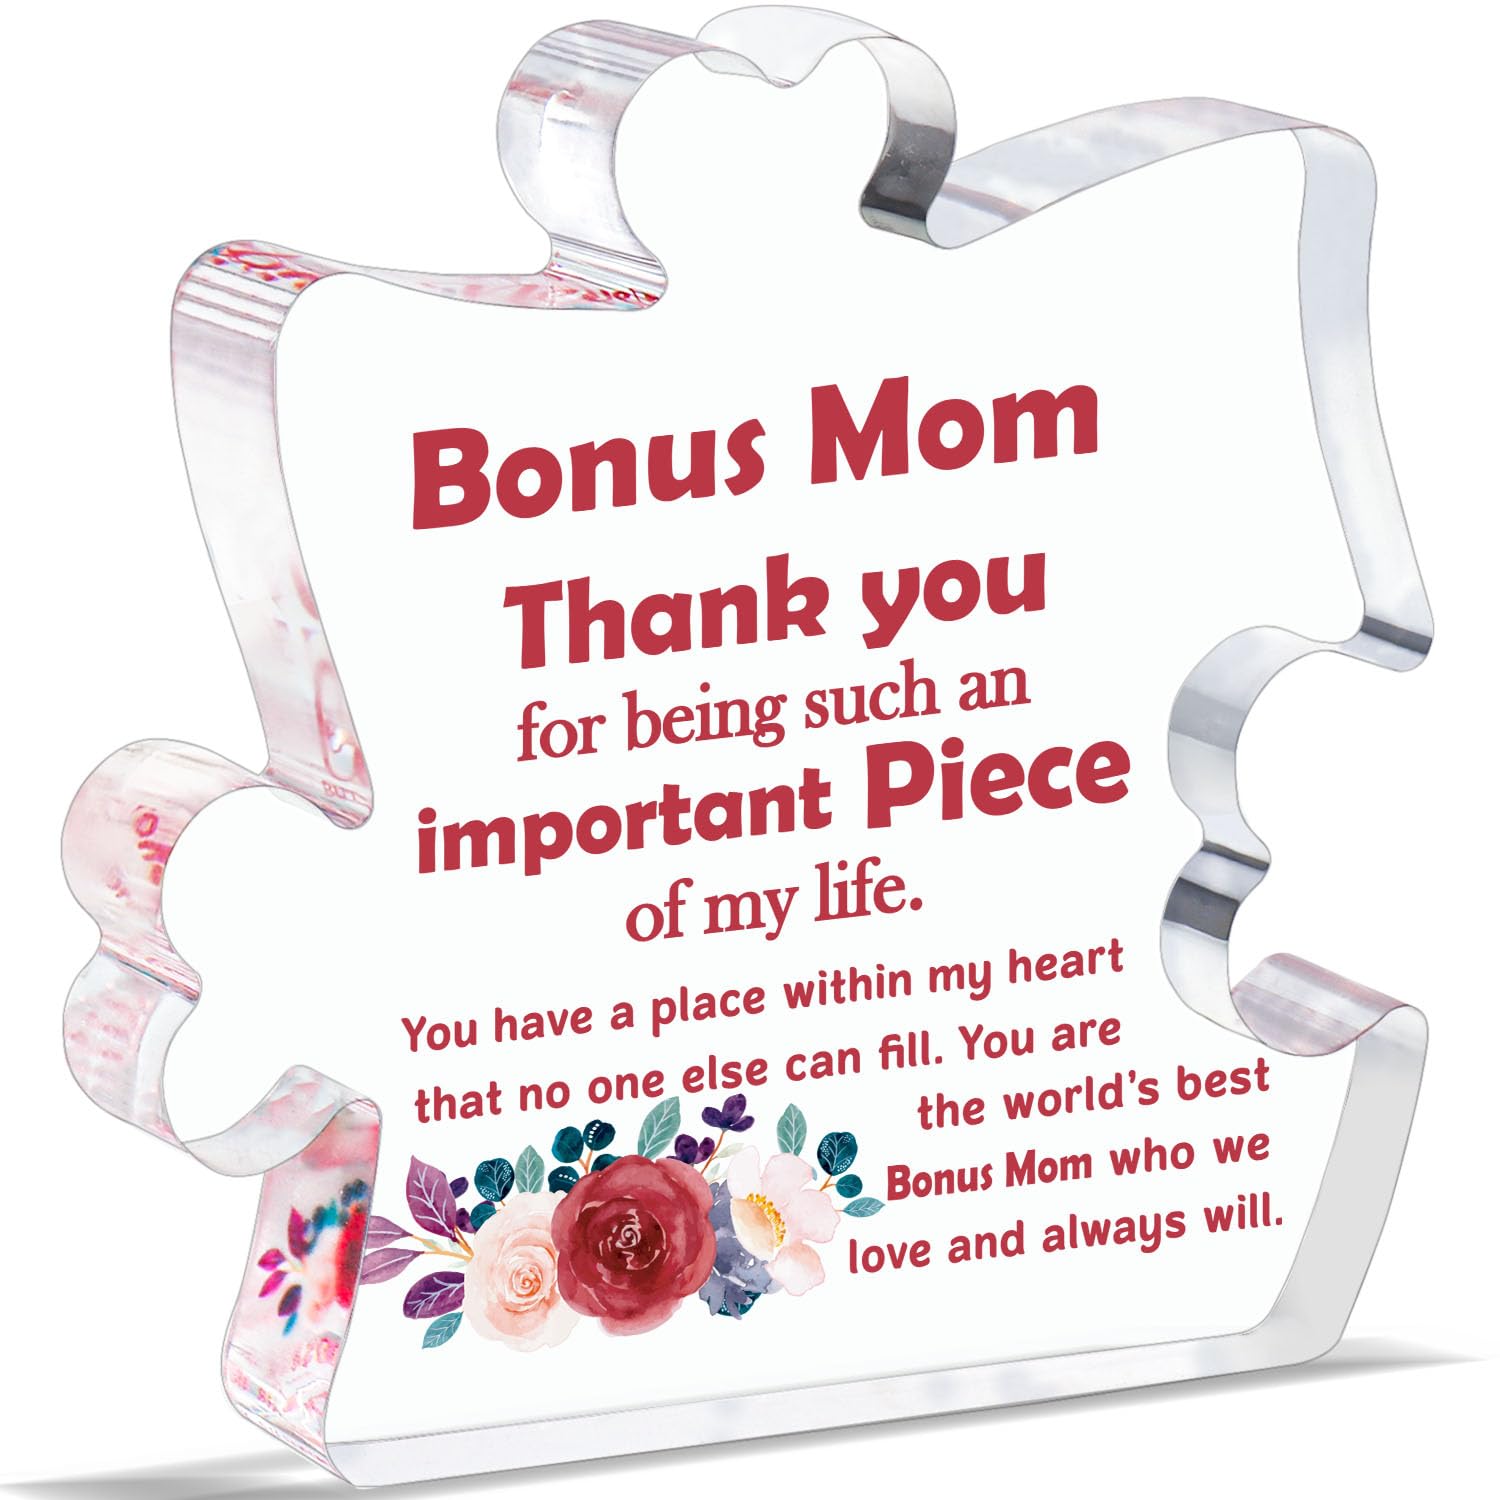 Bonus Mom Christmas Ornament, Bonus Mom Gift, Step Mother Gift